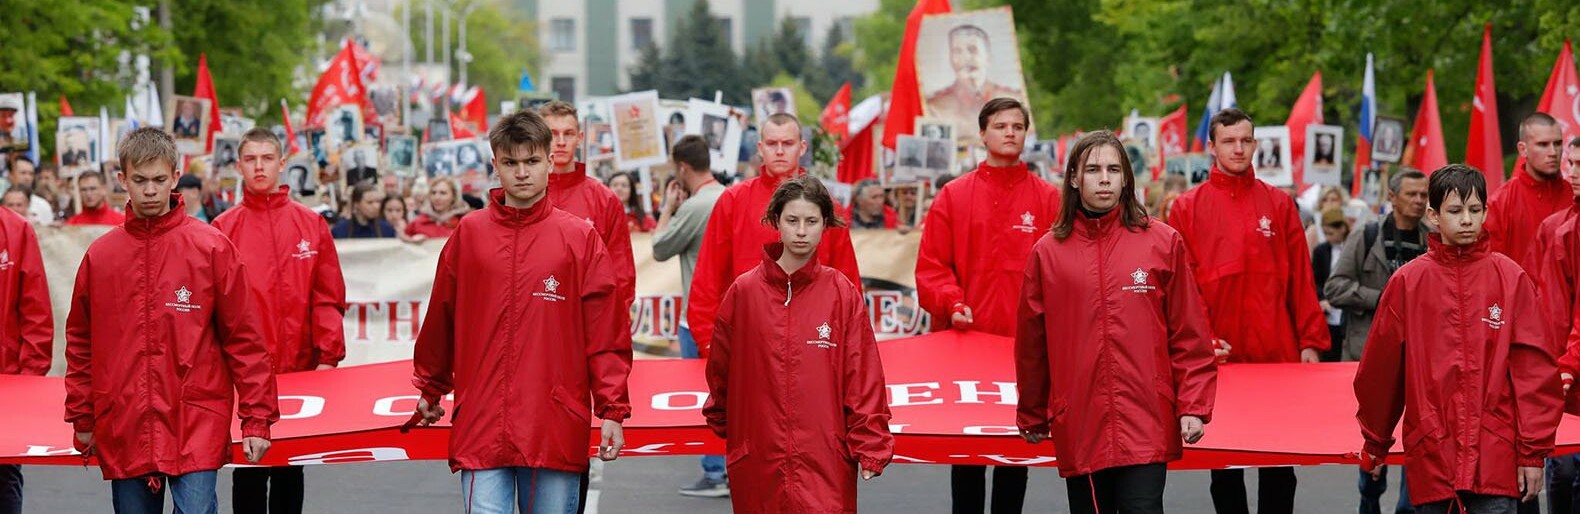 Белгородских волонтёров начнут награждать почётным знаком «Доброволец Белгородчины»